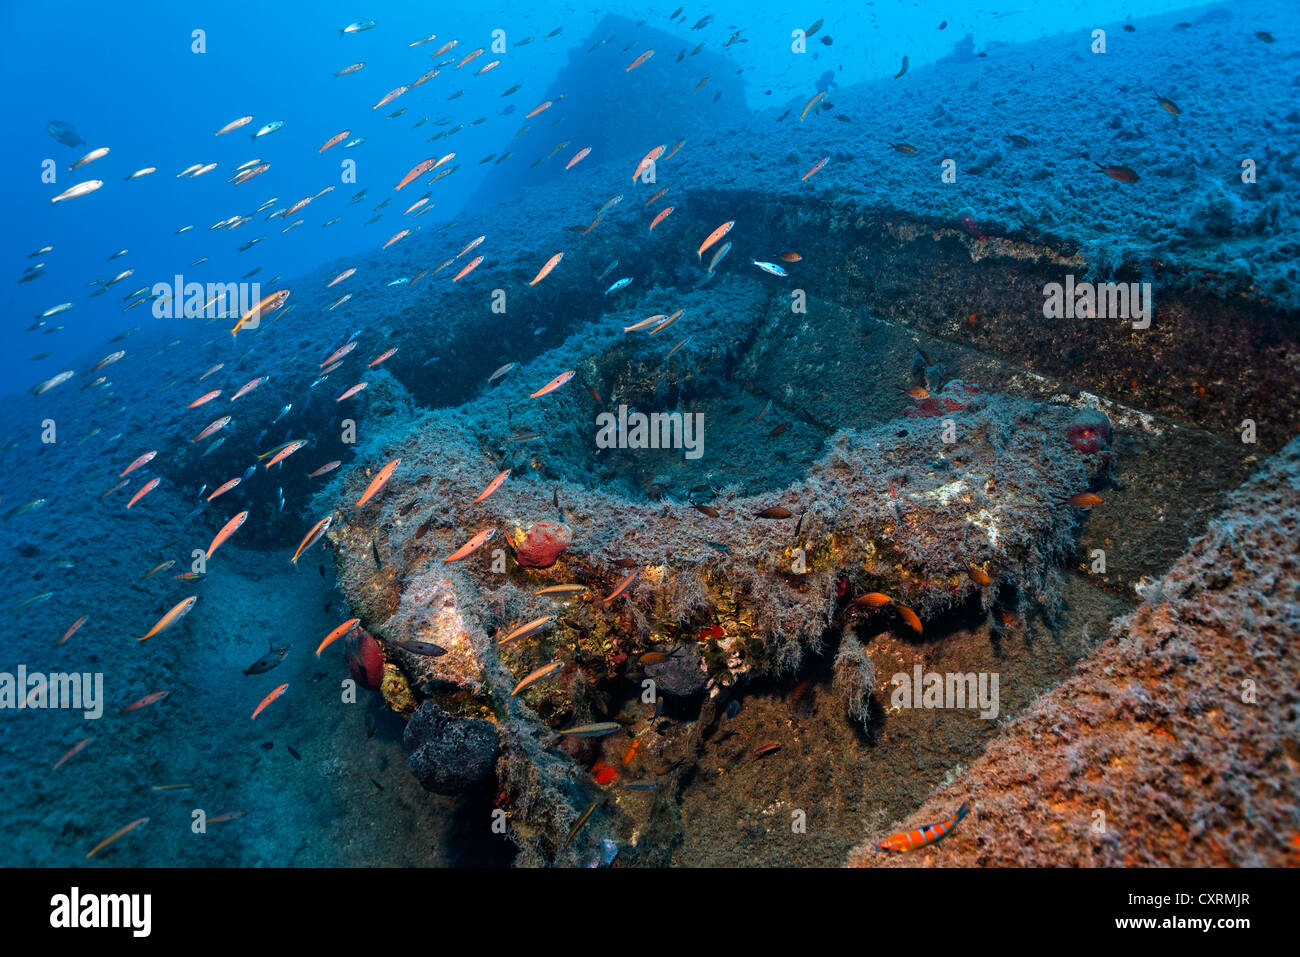 Banc de différentes espèces de poissons qui nagent au-dessus de l'ancre, épave du Zenobia, Chypre, Asie, Europe, Méditerranée Banque D'Images